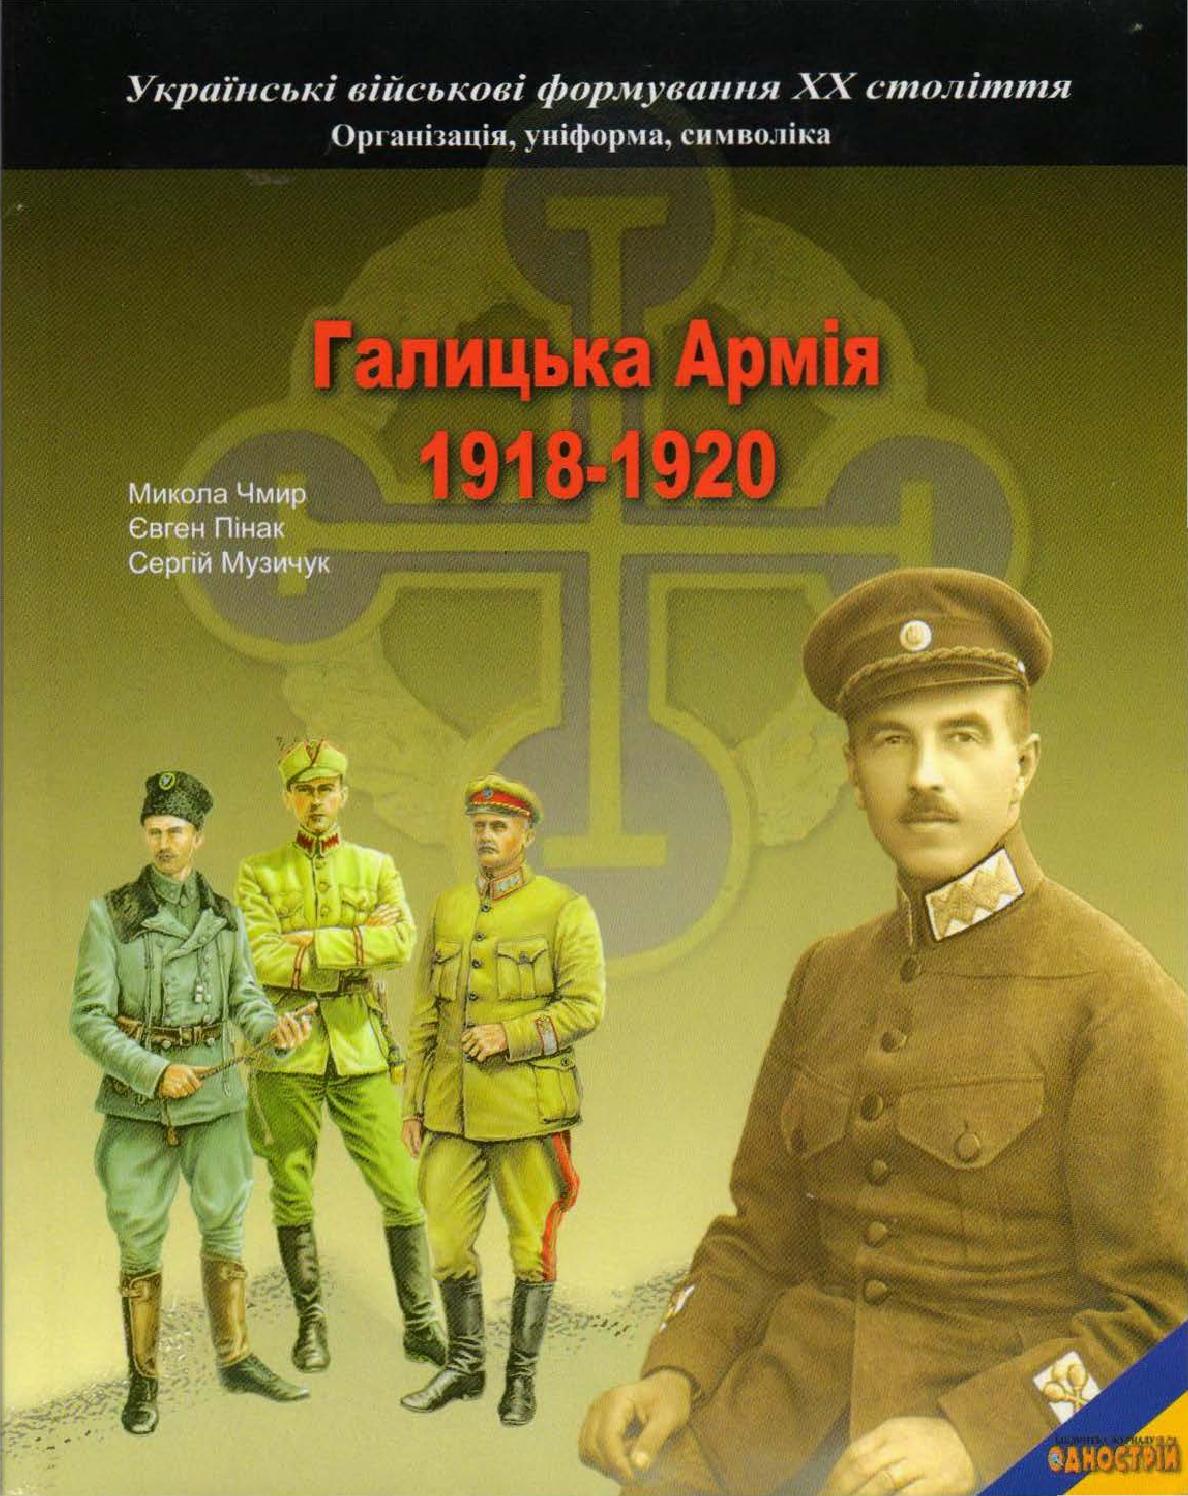 Галицька Армія 1918- 1920, 2008, Микола Чмир, Євген Пінак, Сергій Музичук